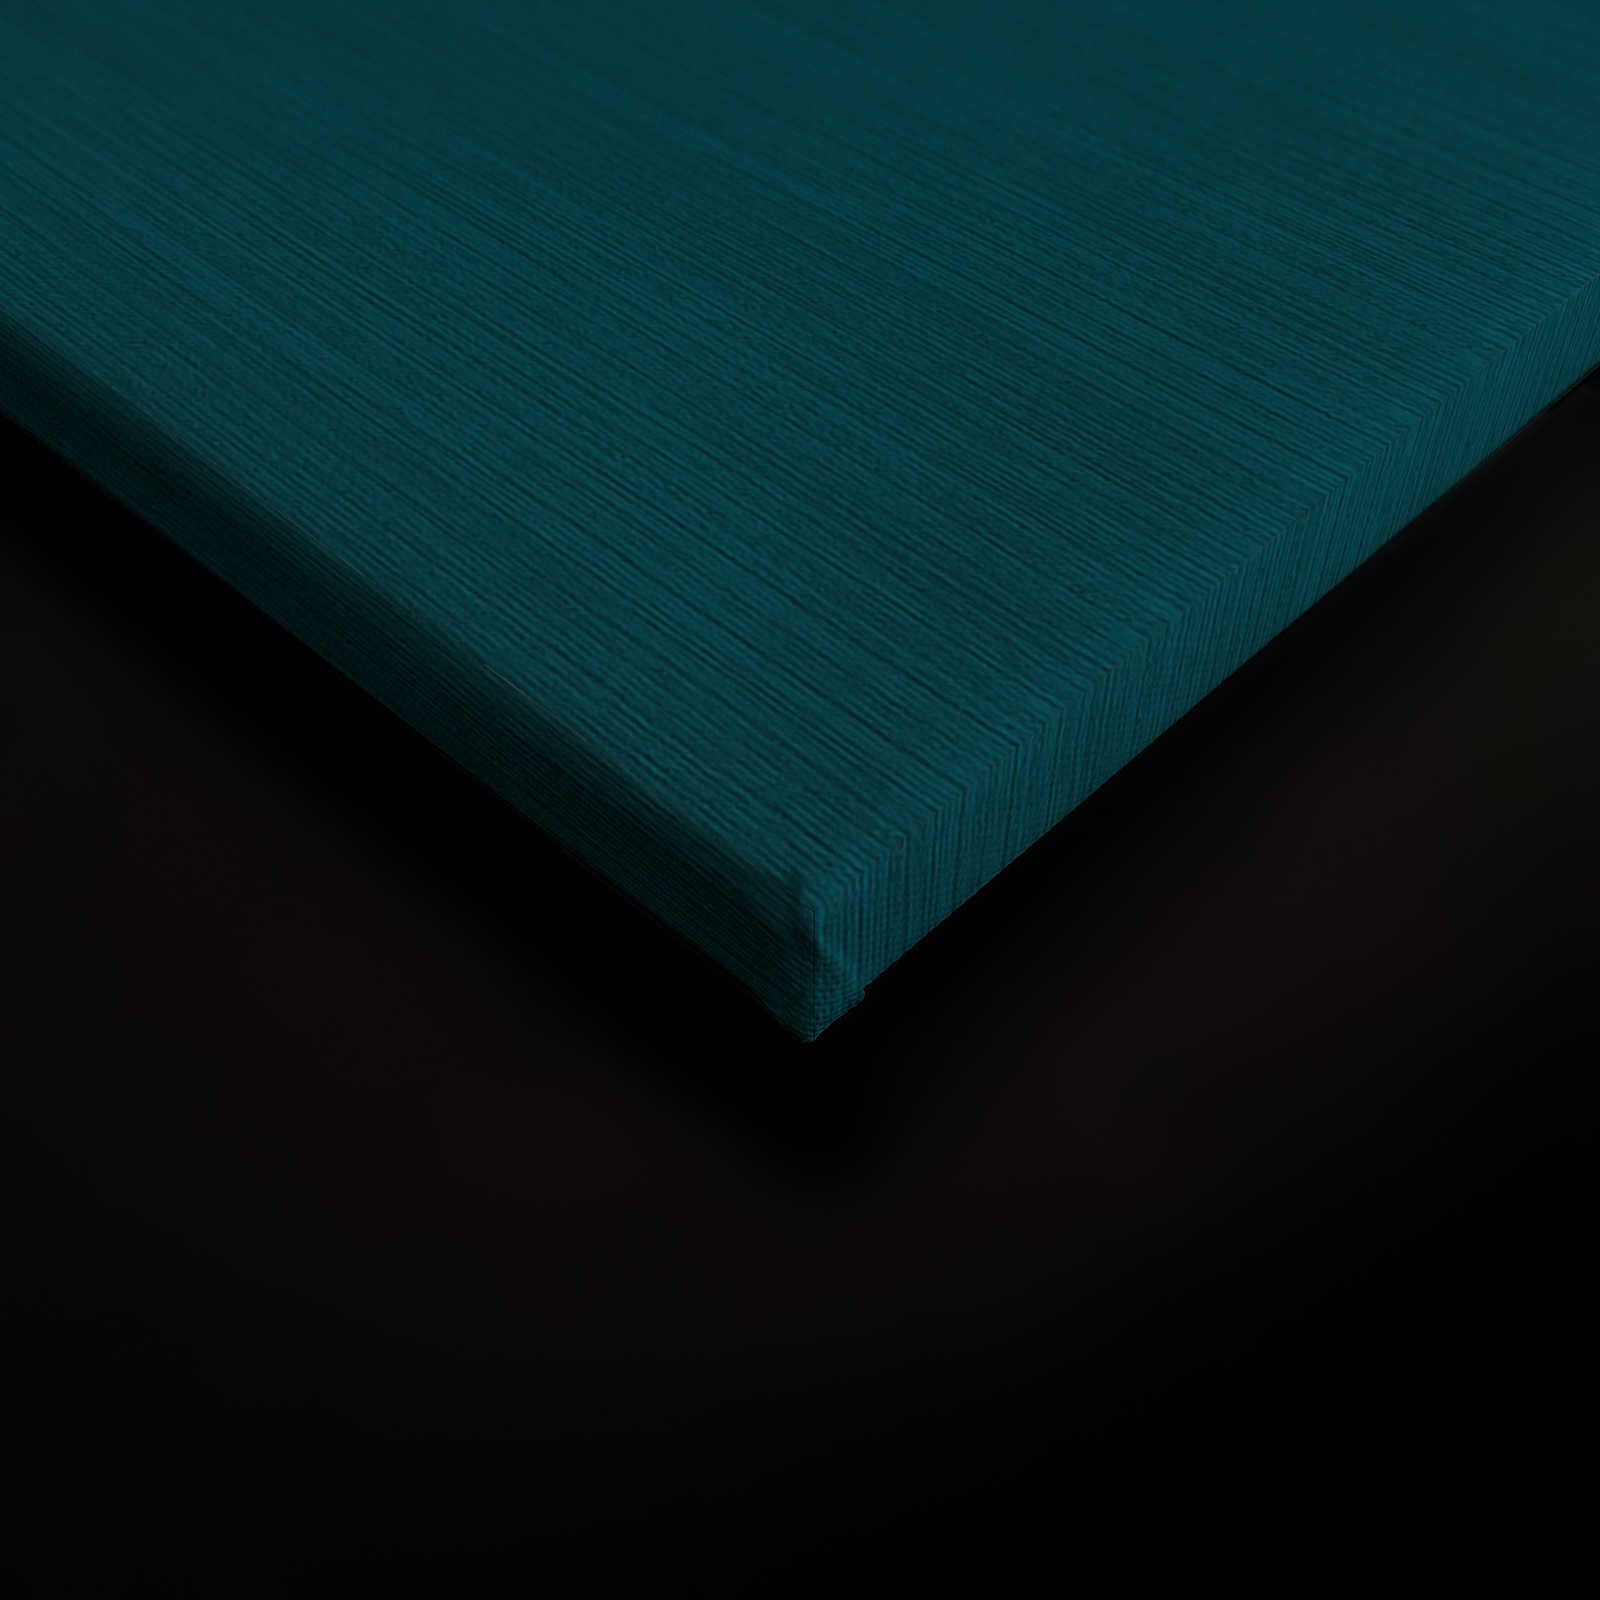             Down Under 2 - Quadro su tela color petrolio stile sirena comica - 0,90 m x 0,60 m
        